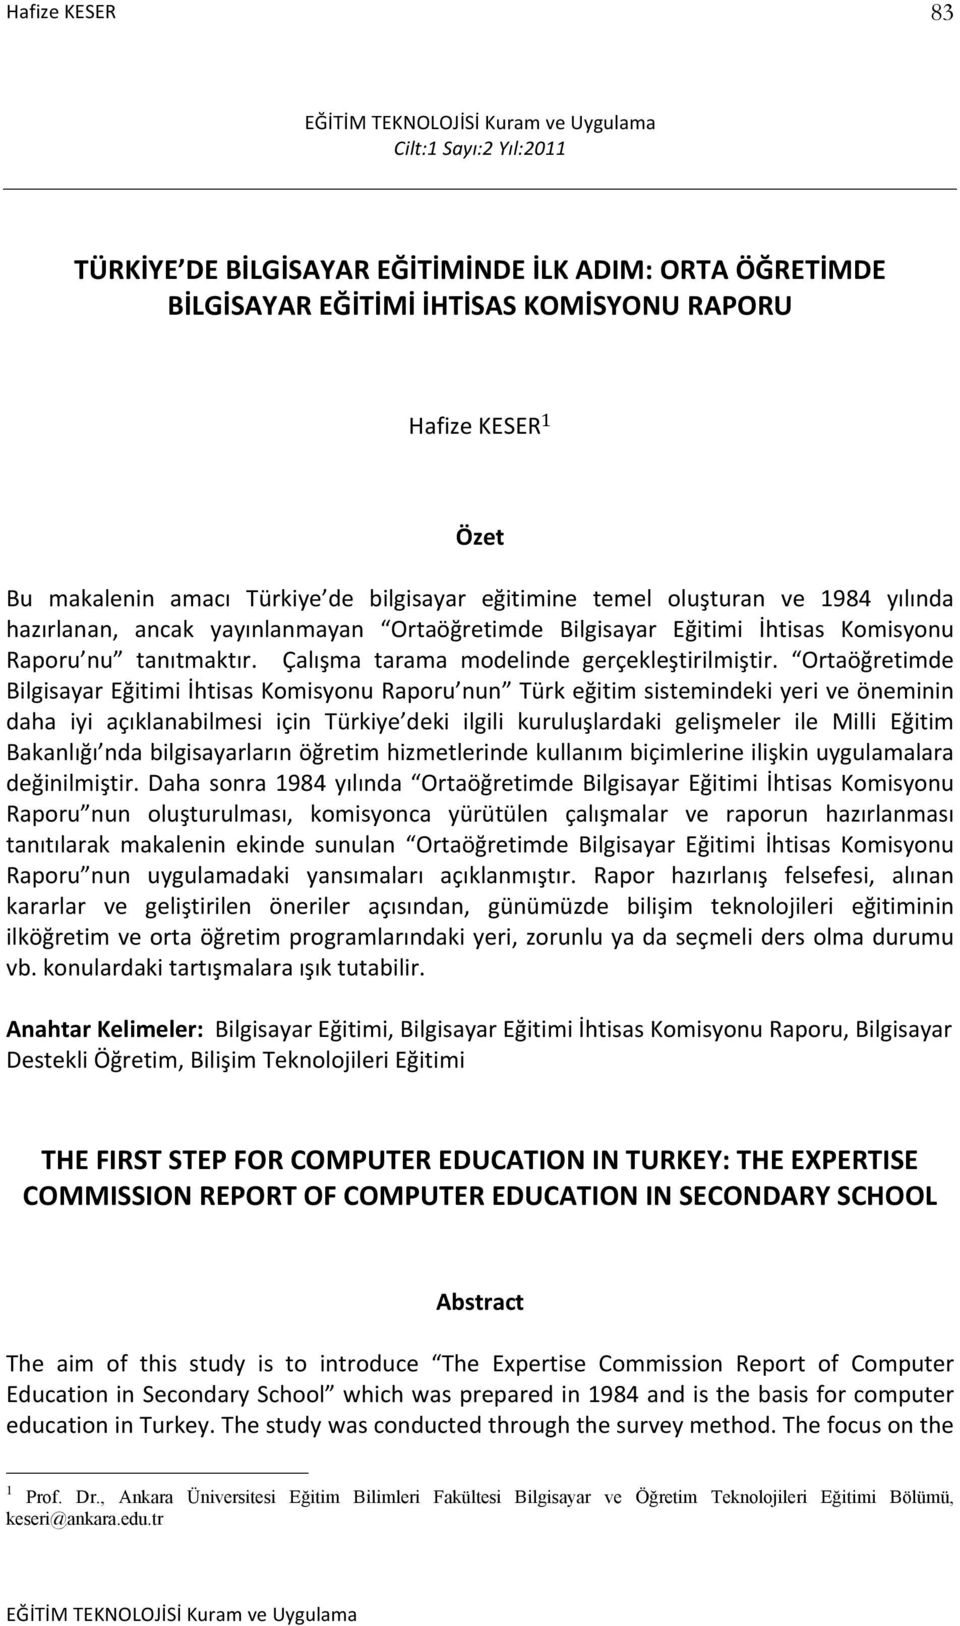 Ortaöğretimde Bilgisayar Eğitimi İhtisas Komisyonu Raporu nun Türk eğitim sistemindeki yeri ve öneminin daha iyi açıklanabilmesi için Türkiye deki ilgili kuruluşlardaki gelişmeler ile Milli Eğitim